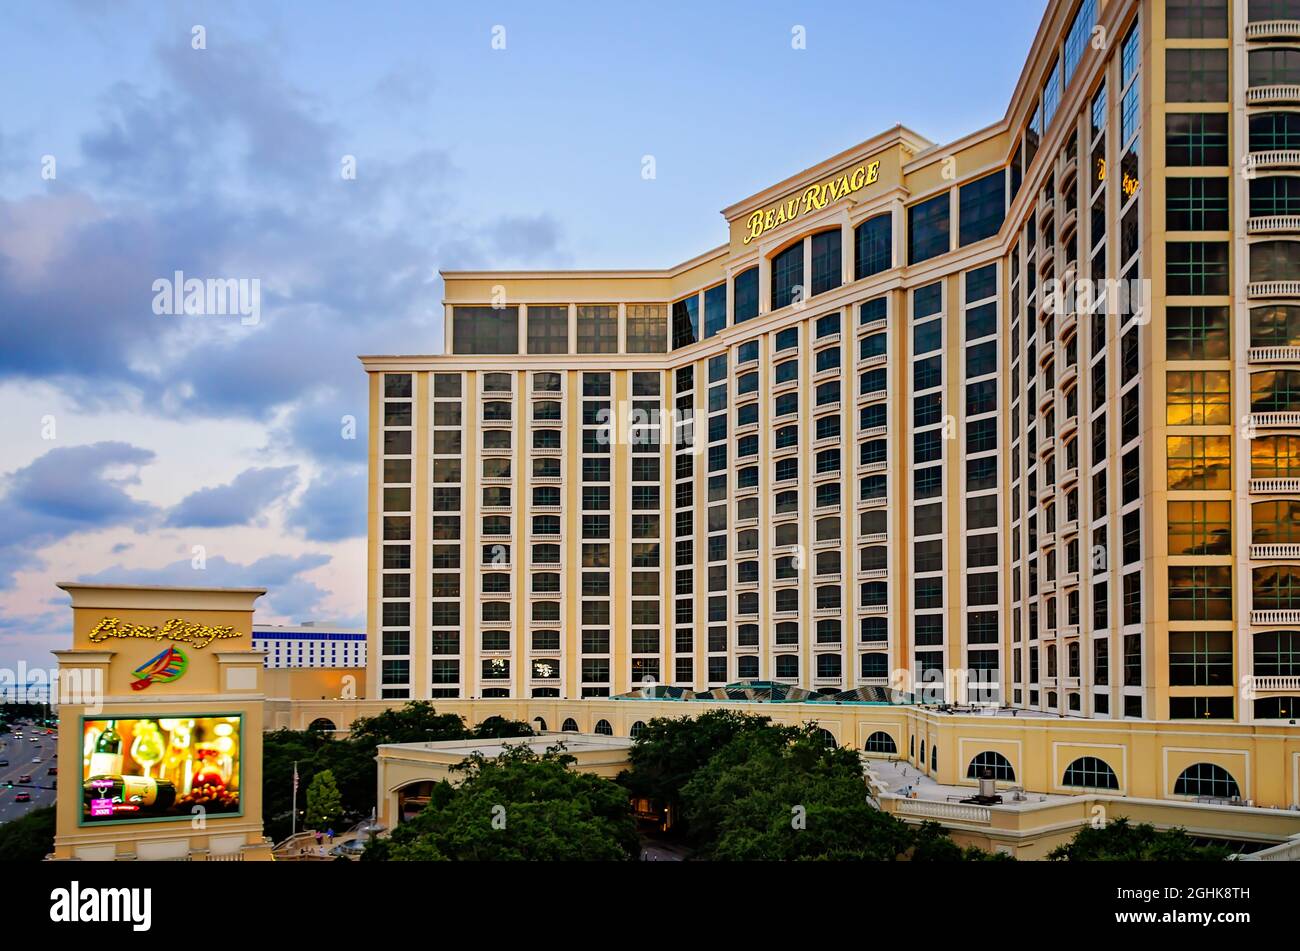 Das Beau Rivage Casino ist am 5. September 2021 in Biloxi, Mississippi, abgebildet. Beau Rivage gehört und wird von MGM Resorts International betrieben. Stockfoto